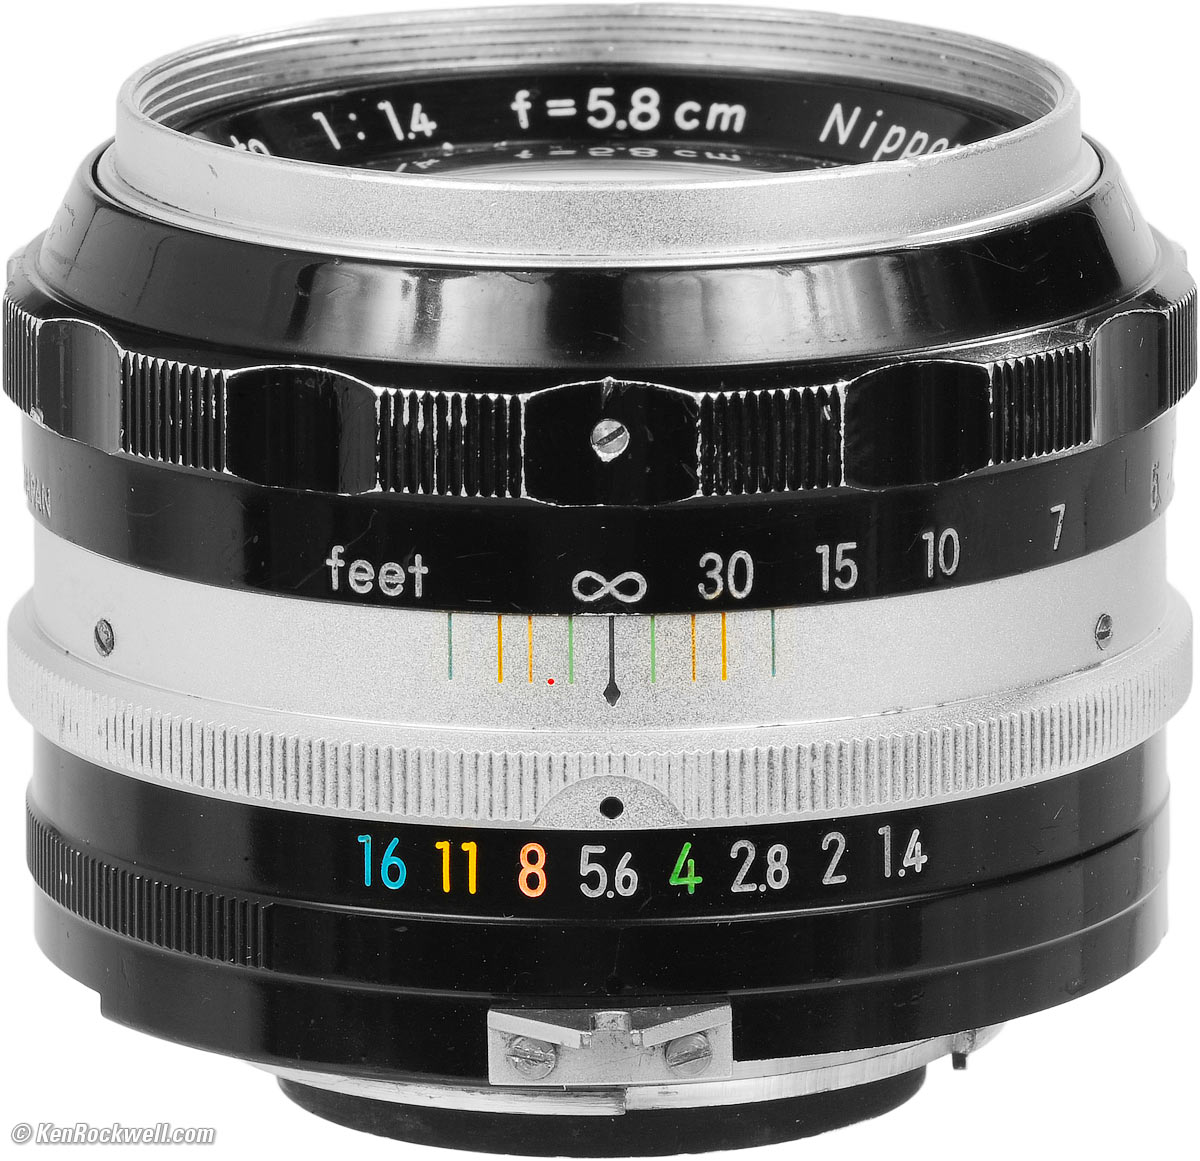 Nikon 58mm f/1.4 Review